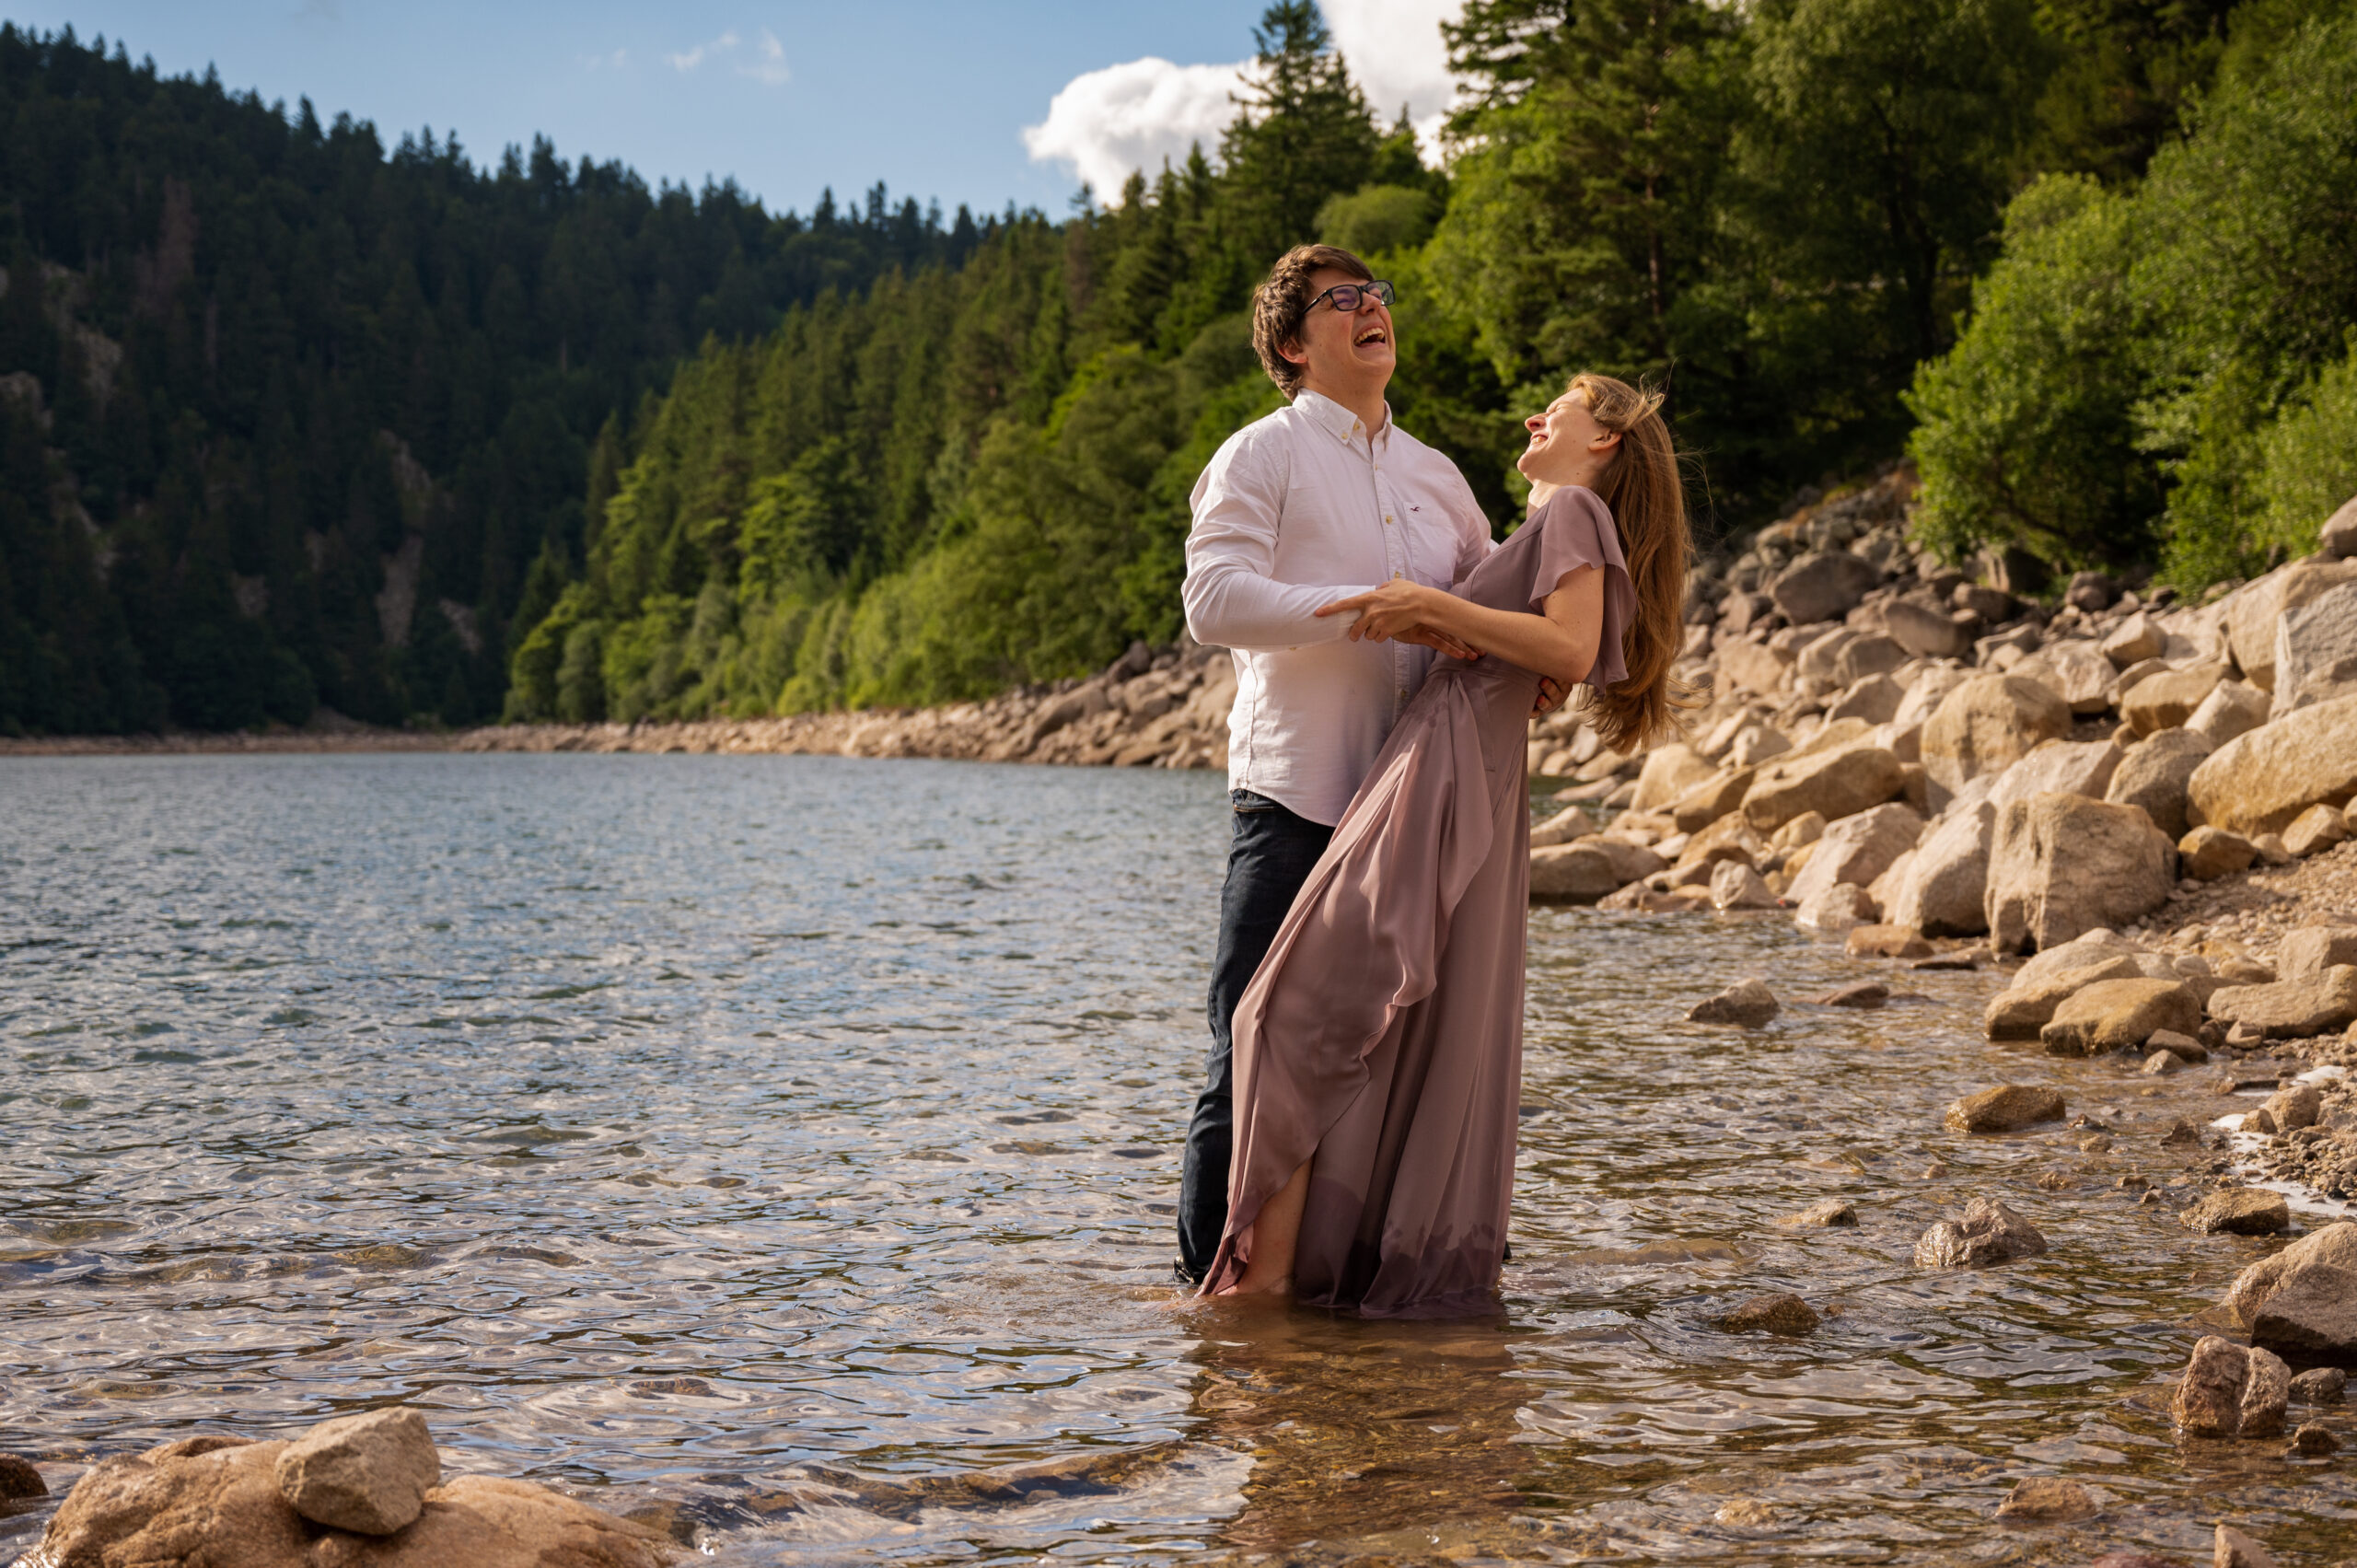 photographe professionnelle couple amour complicité tendresse extérieur lac pied dans l'eau couleur naturelle danse rire